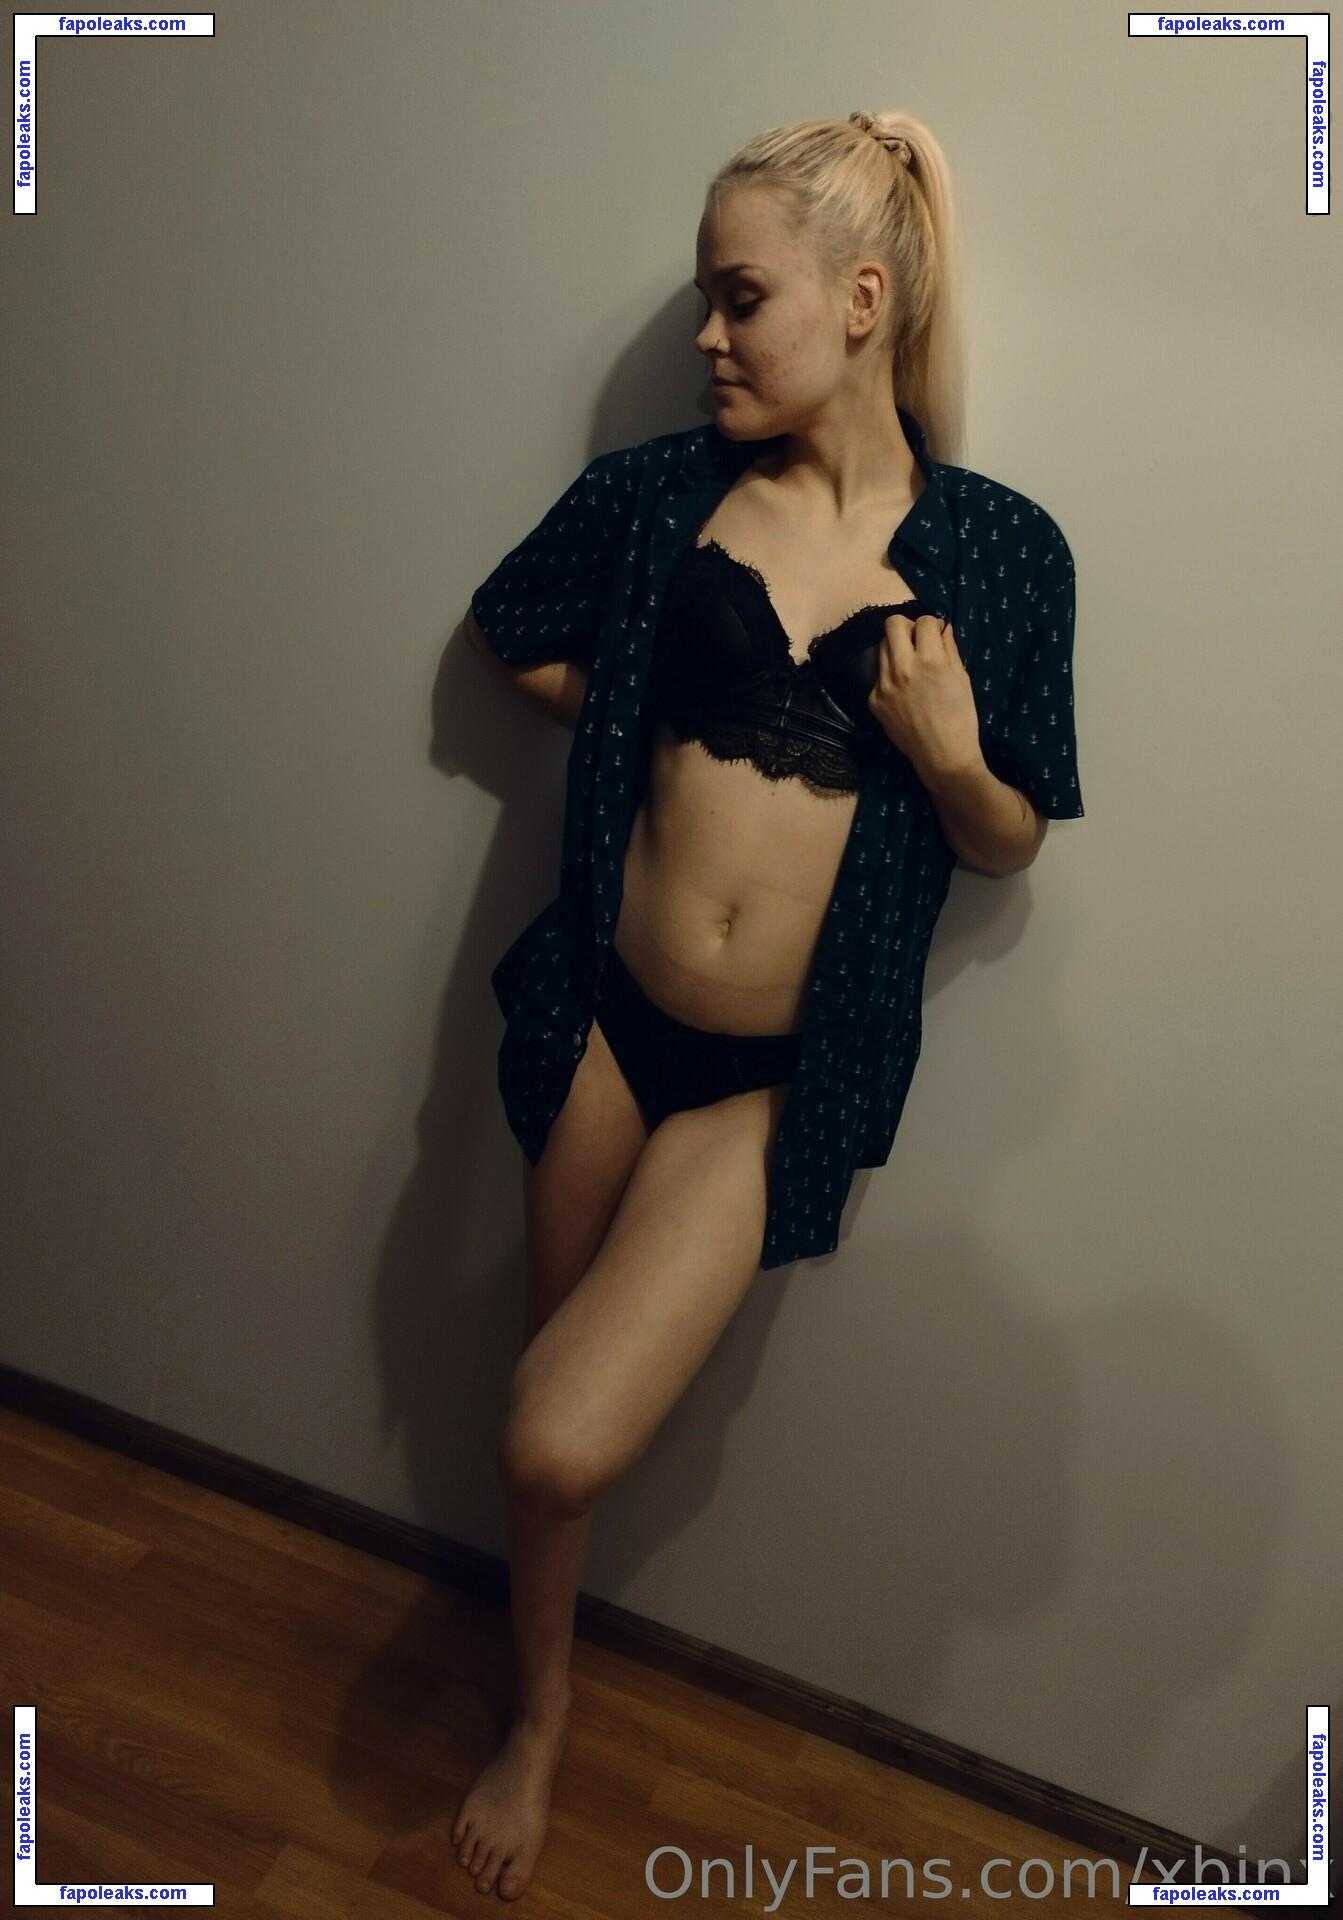 Annika Kuklase / egirl_bin / xbinx nude photo #0024 from OnlyFans